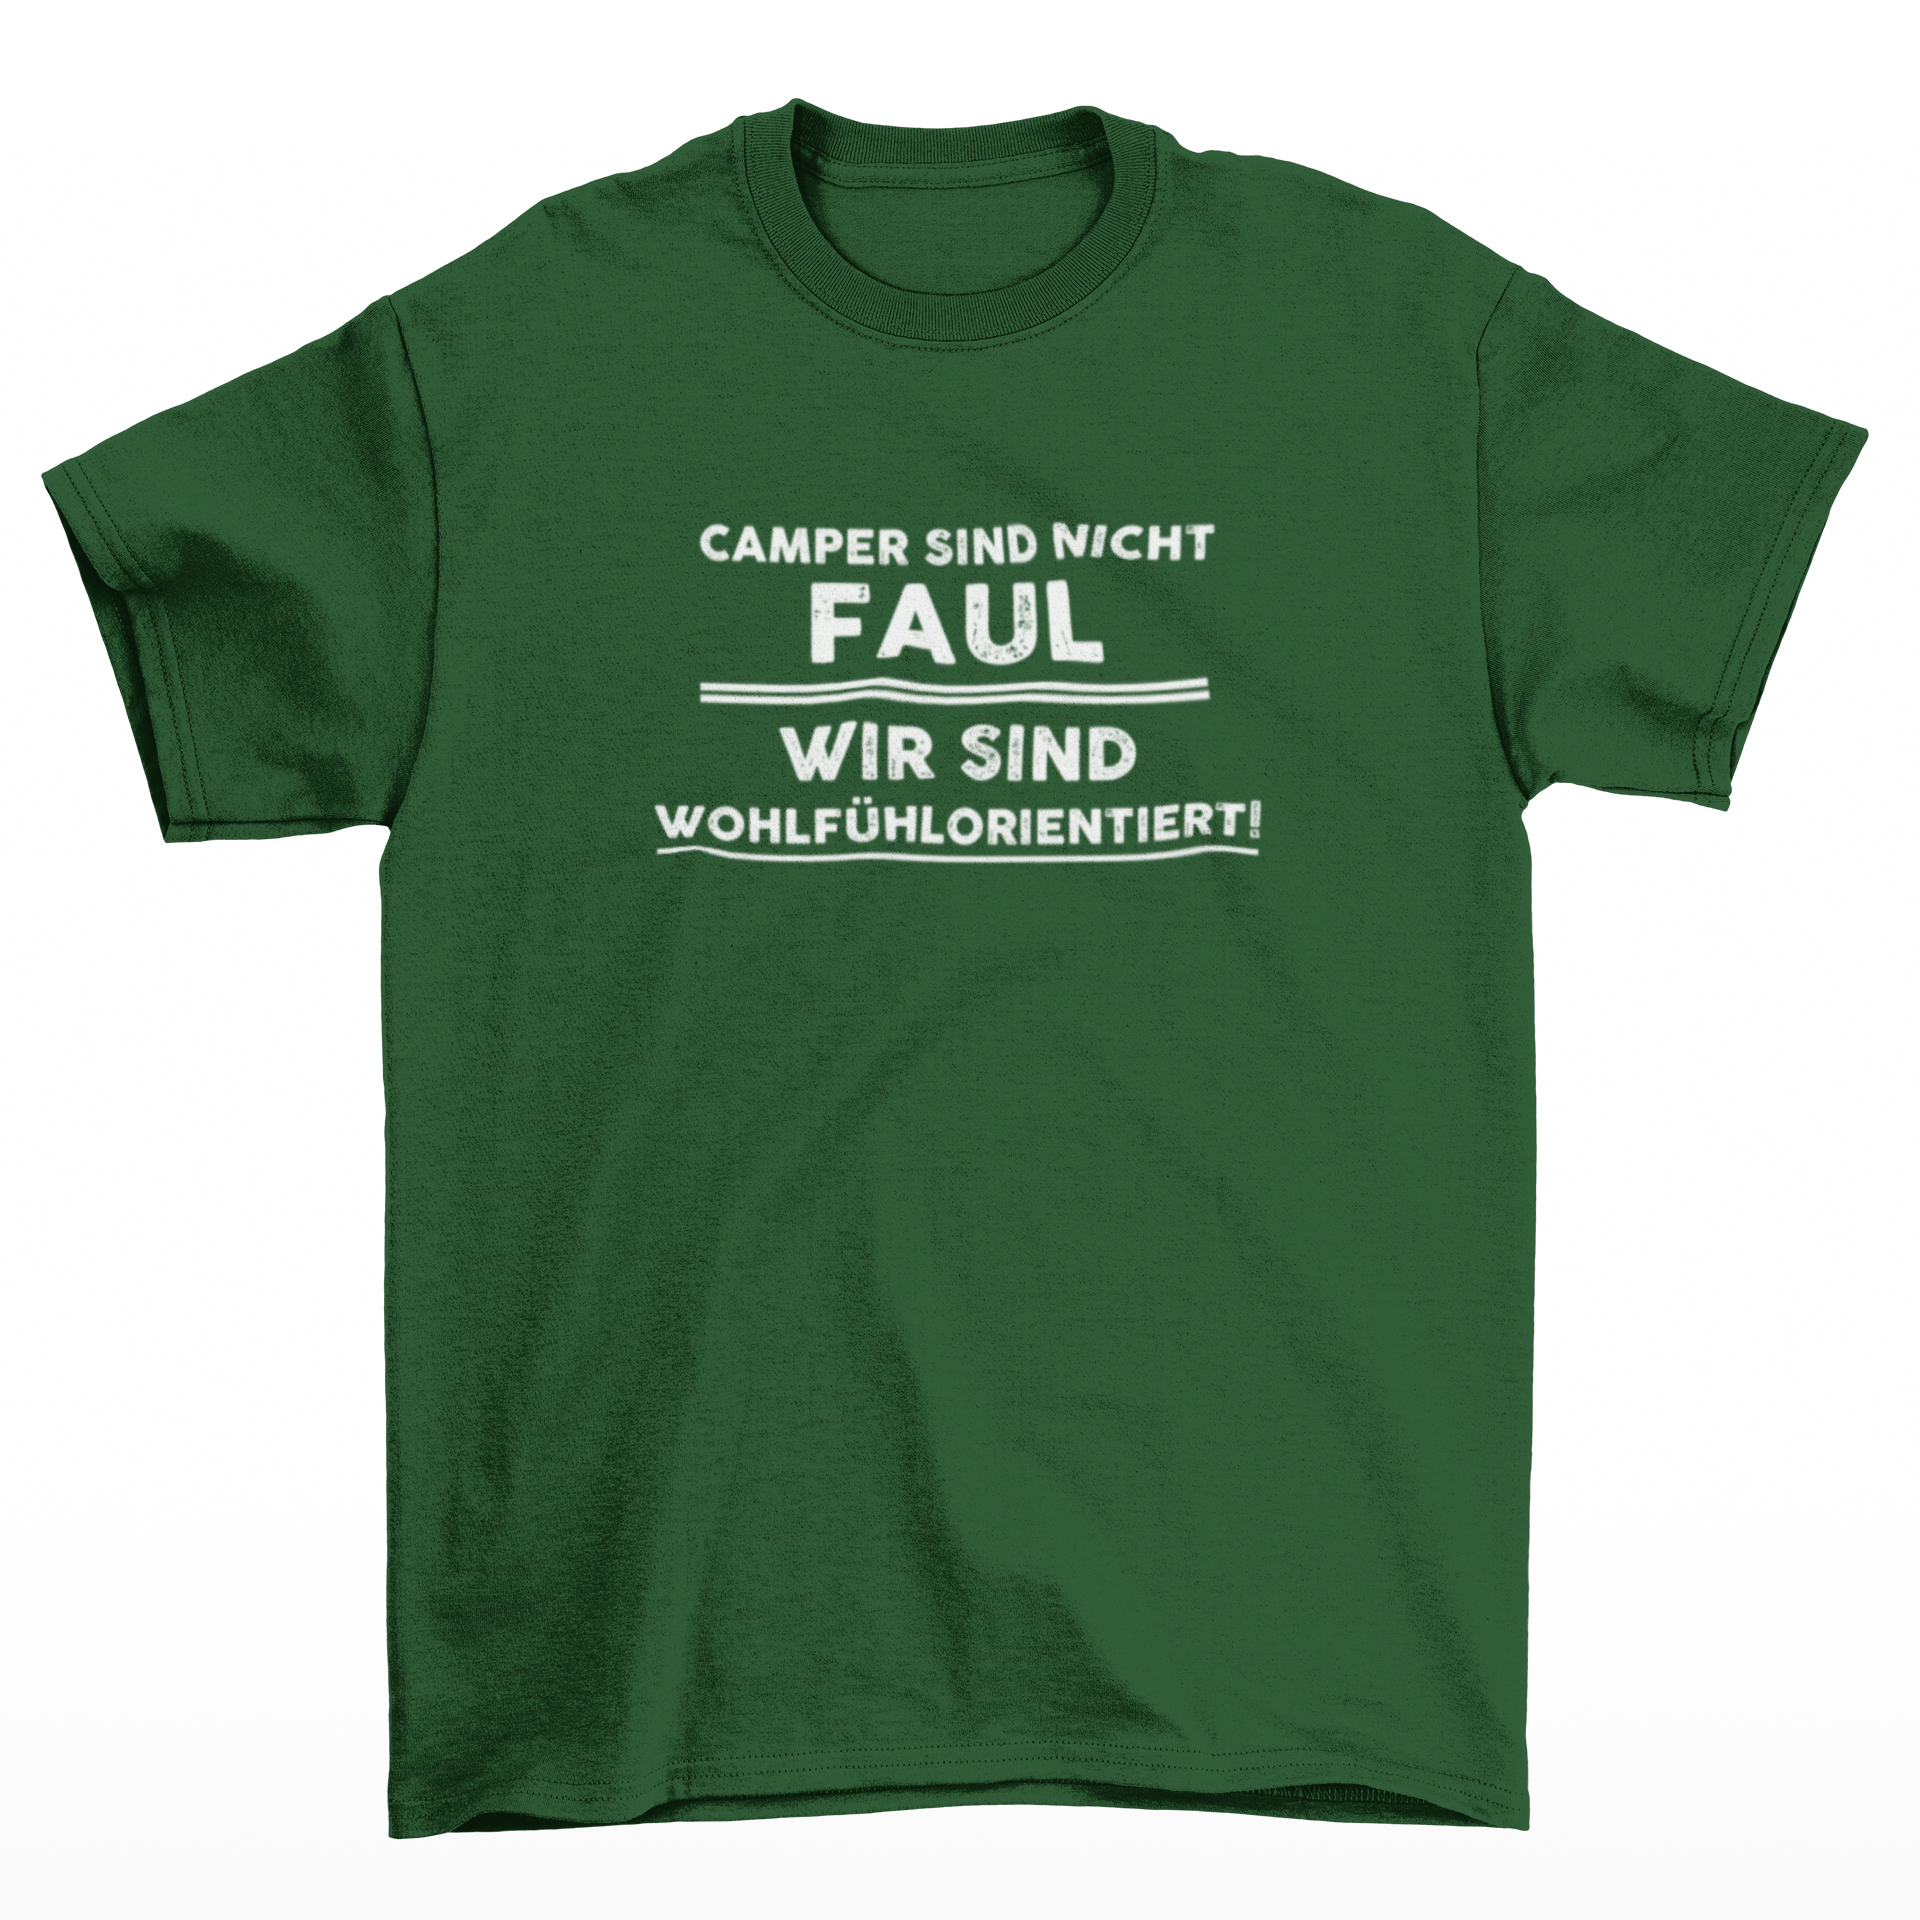 Camper sind nicht faul  - T-Shirt